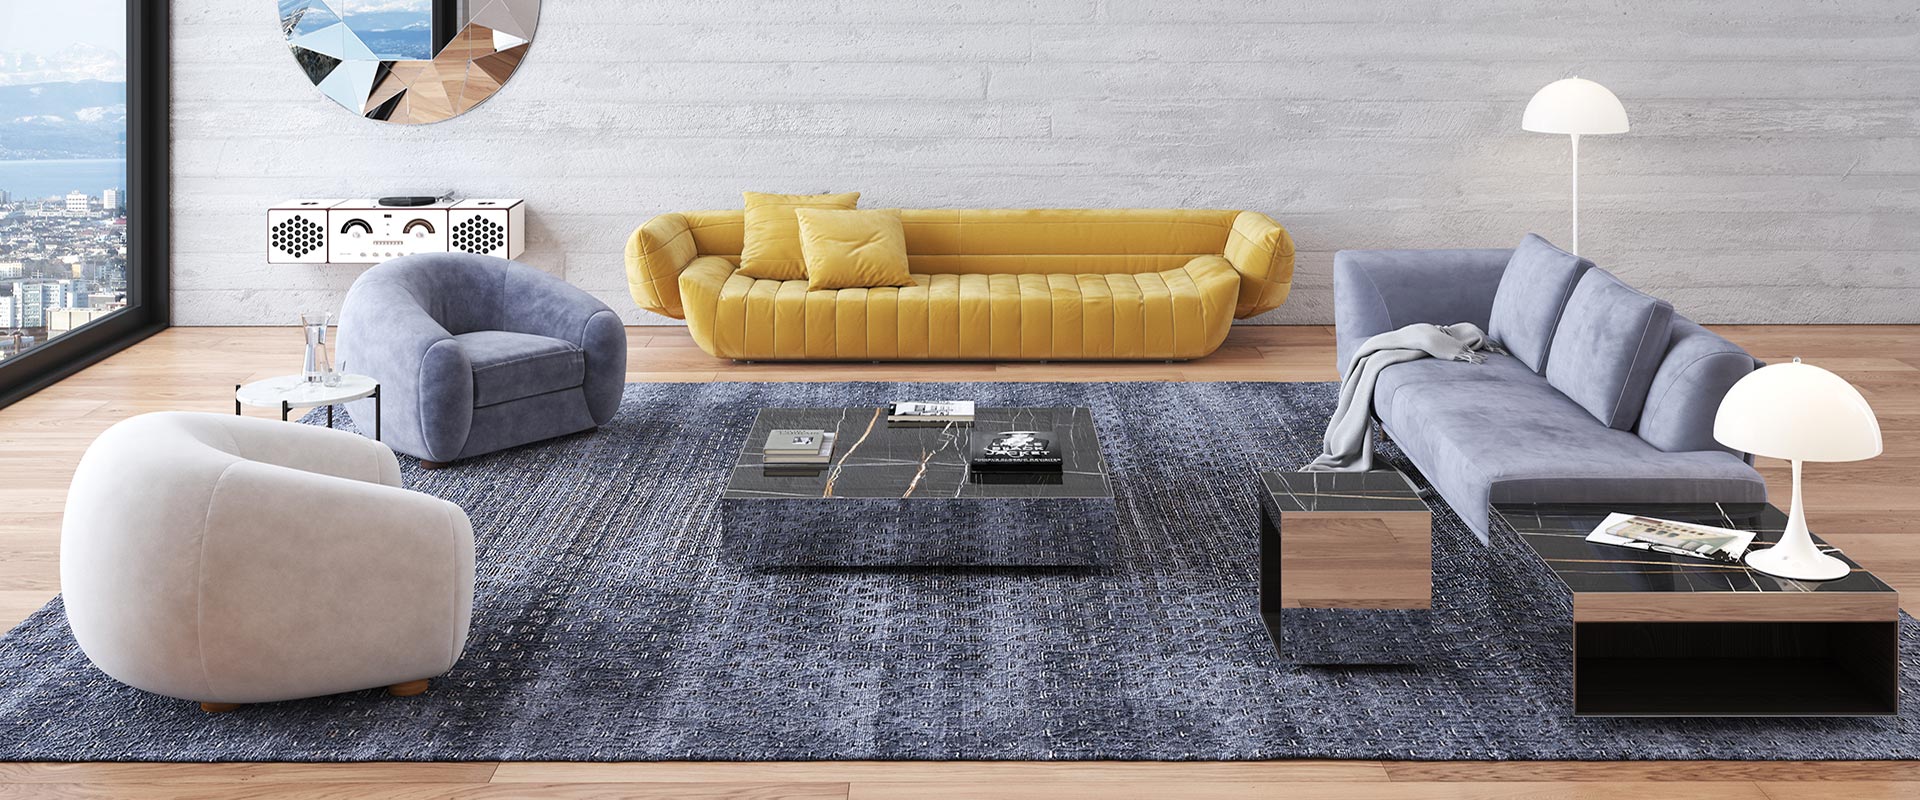 Modern gestaltetes Wohnzimmer mit großem Fensterblick auf die Stadt, einem gelben Sofa, zwei grauen Sesseln, einem großen blauen Teppich, zwei schwarzen Couchtischen und weißen Stehleuchten auf Holzboden vor einer weißen Mauer.